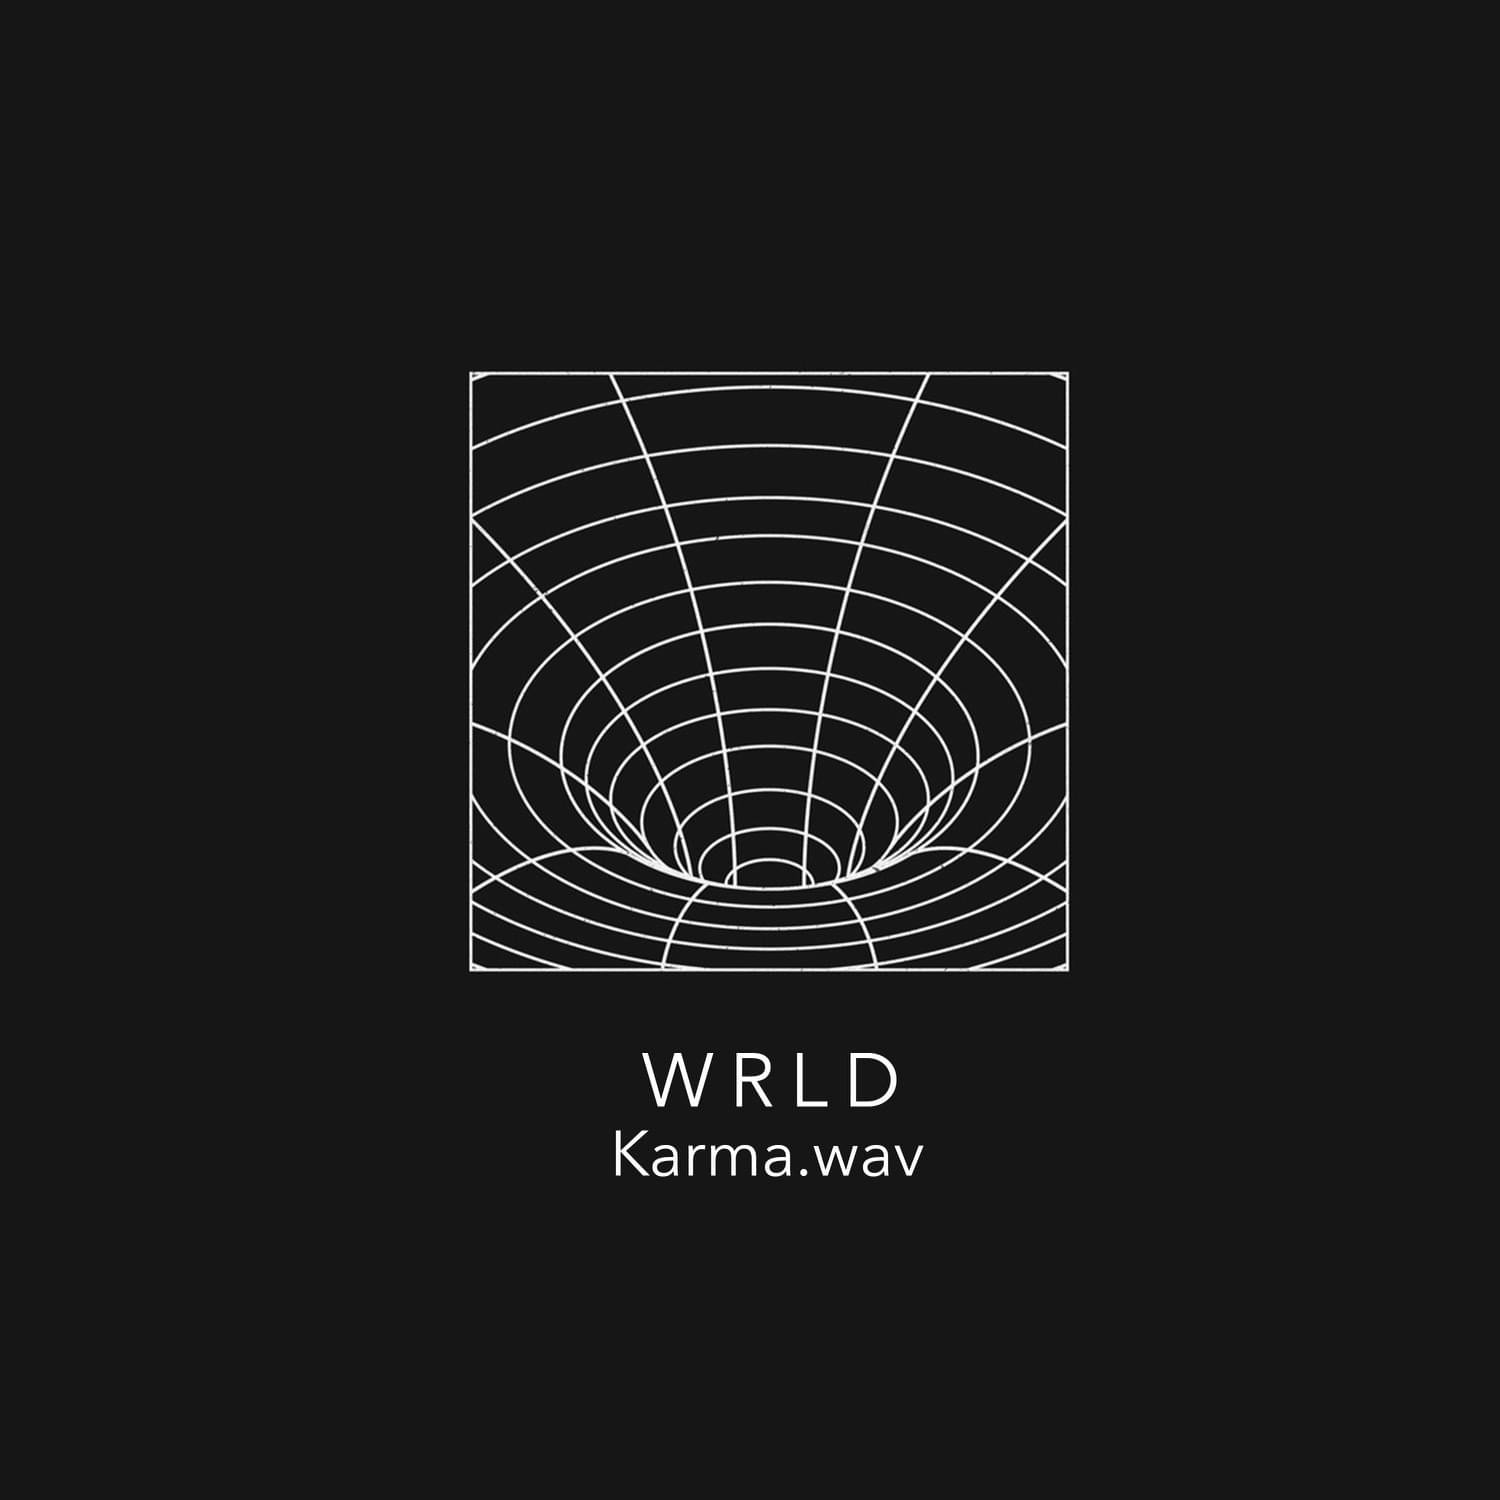 Cover art for Karma.wav's song: WRLD